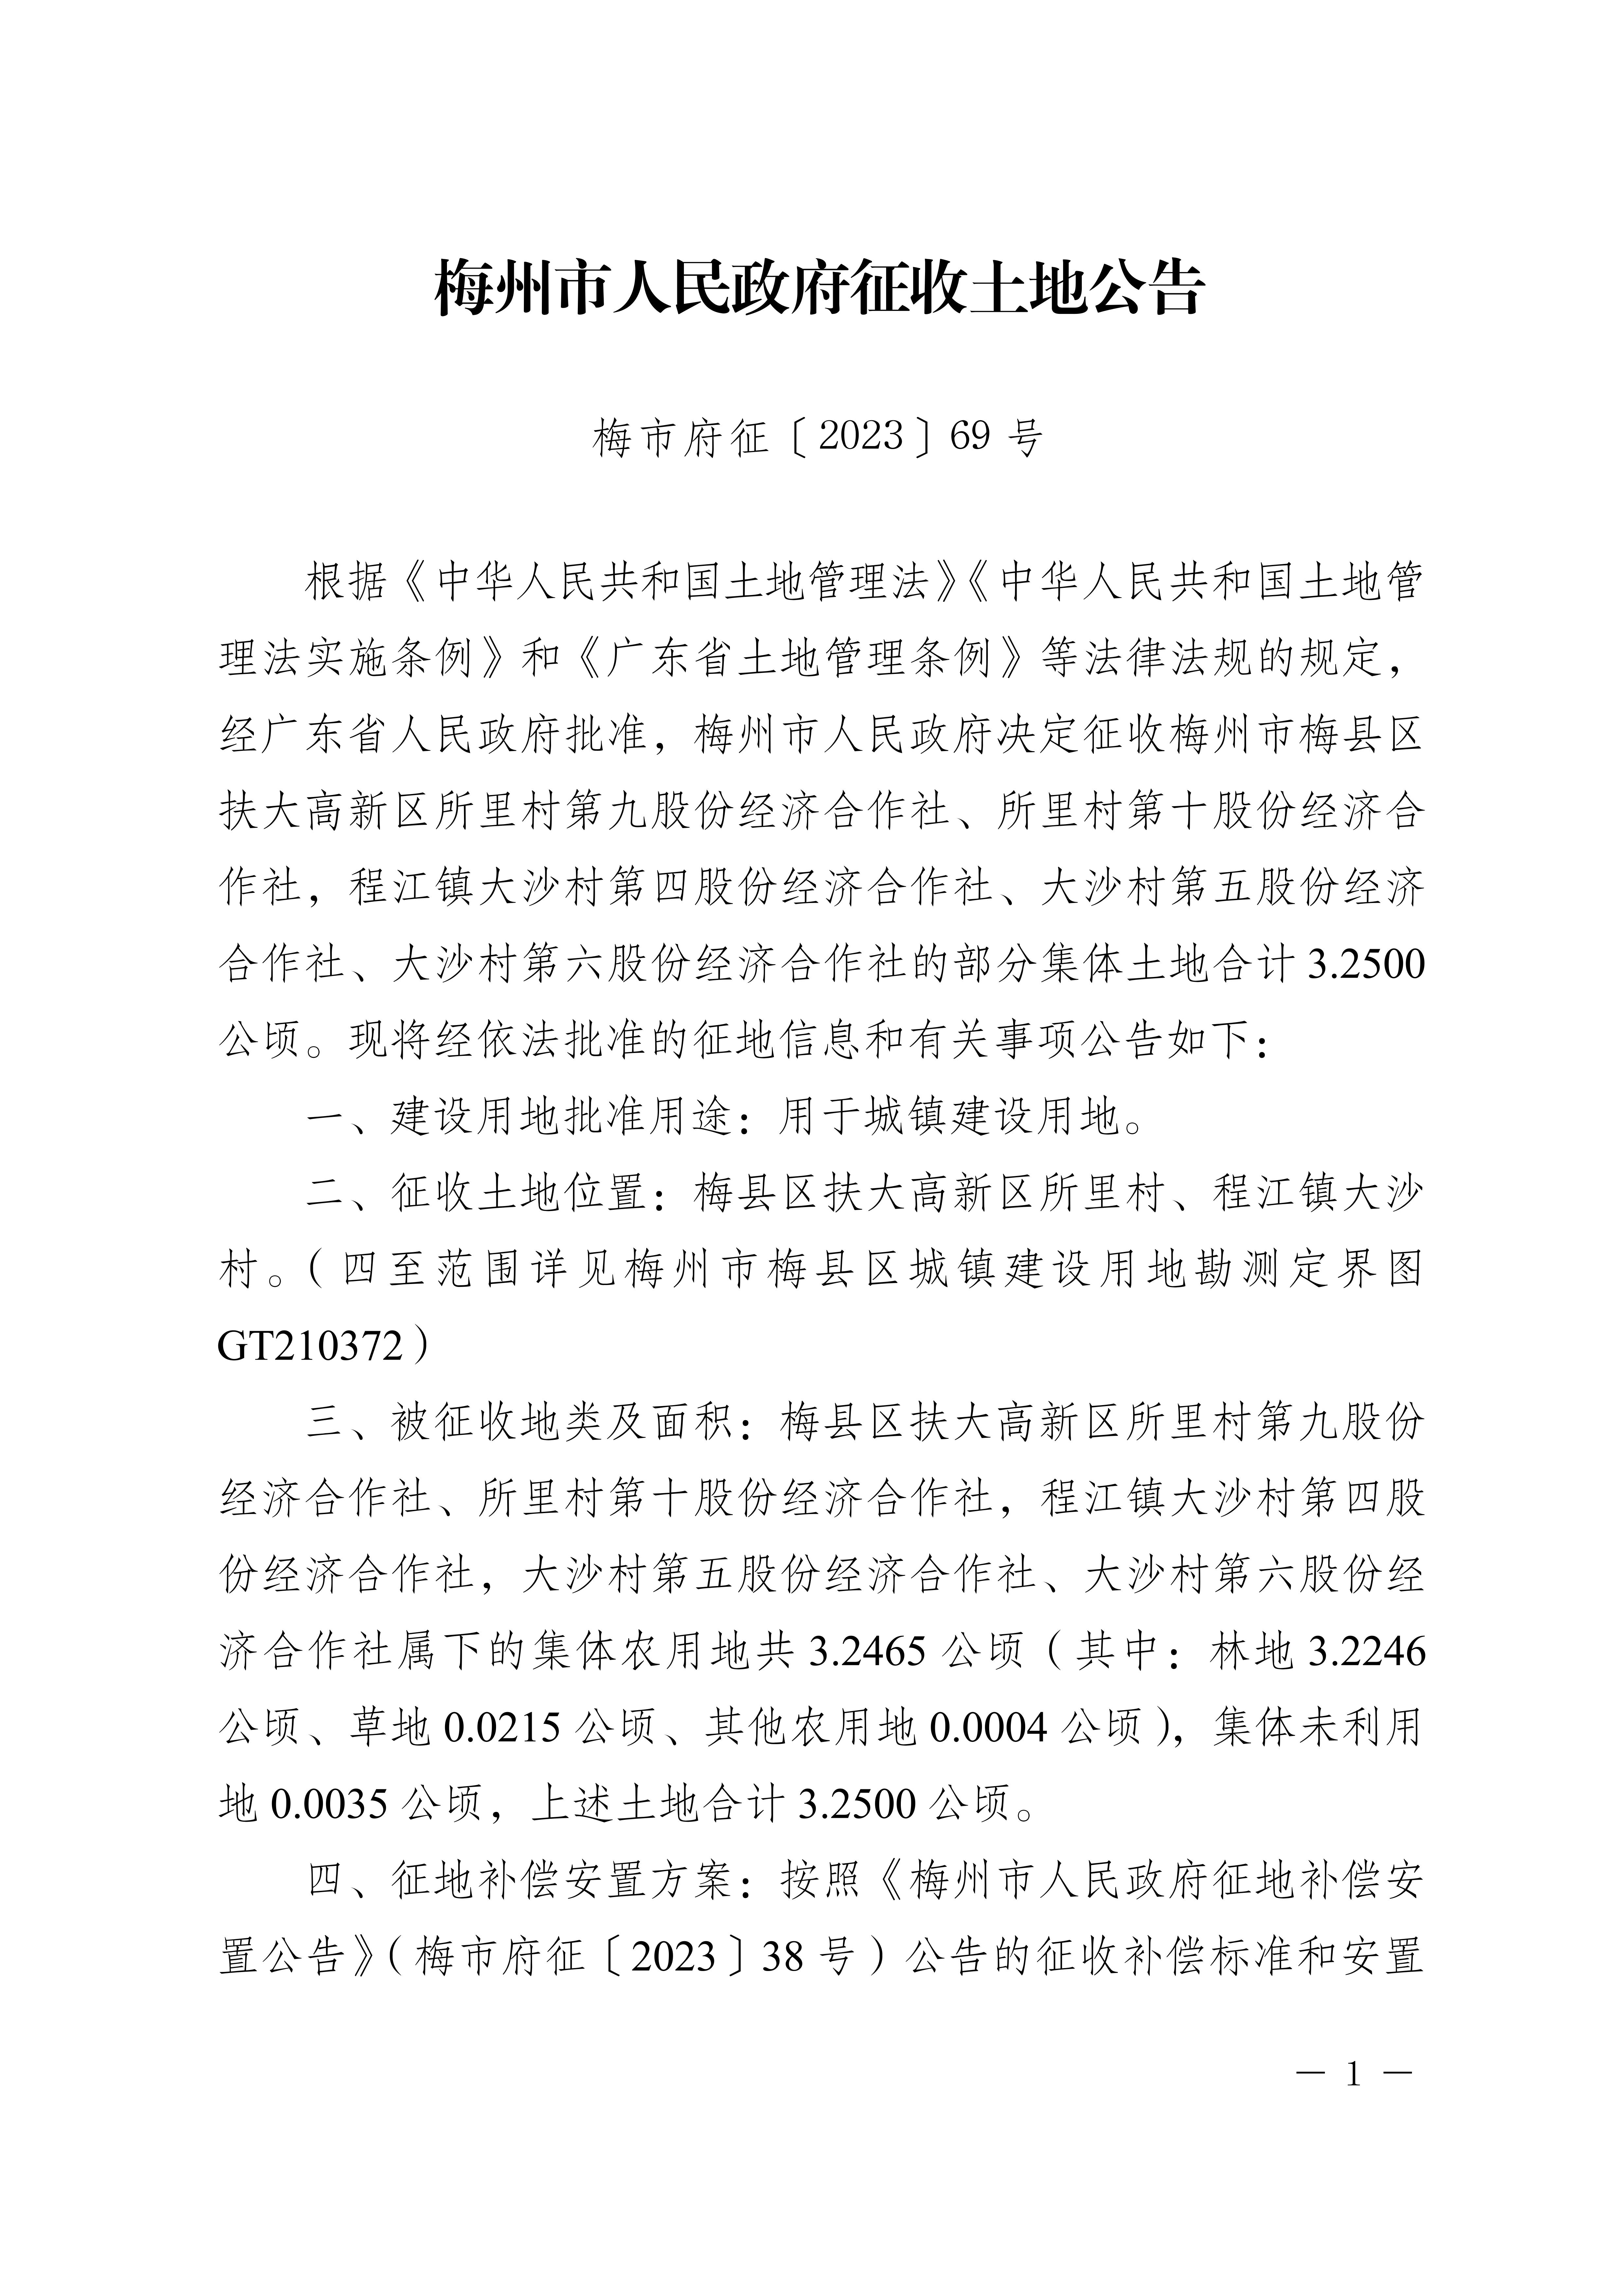 梅州市人民政府征收土地公告（梅市府征〔2023〕69号）张贴稿-1.png